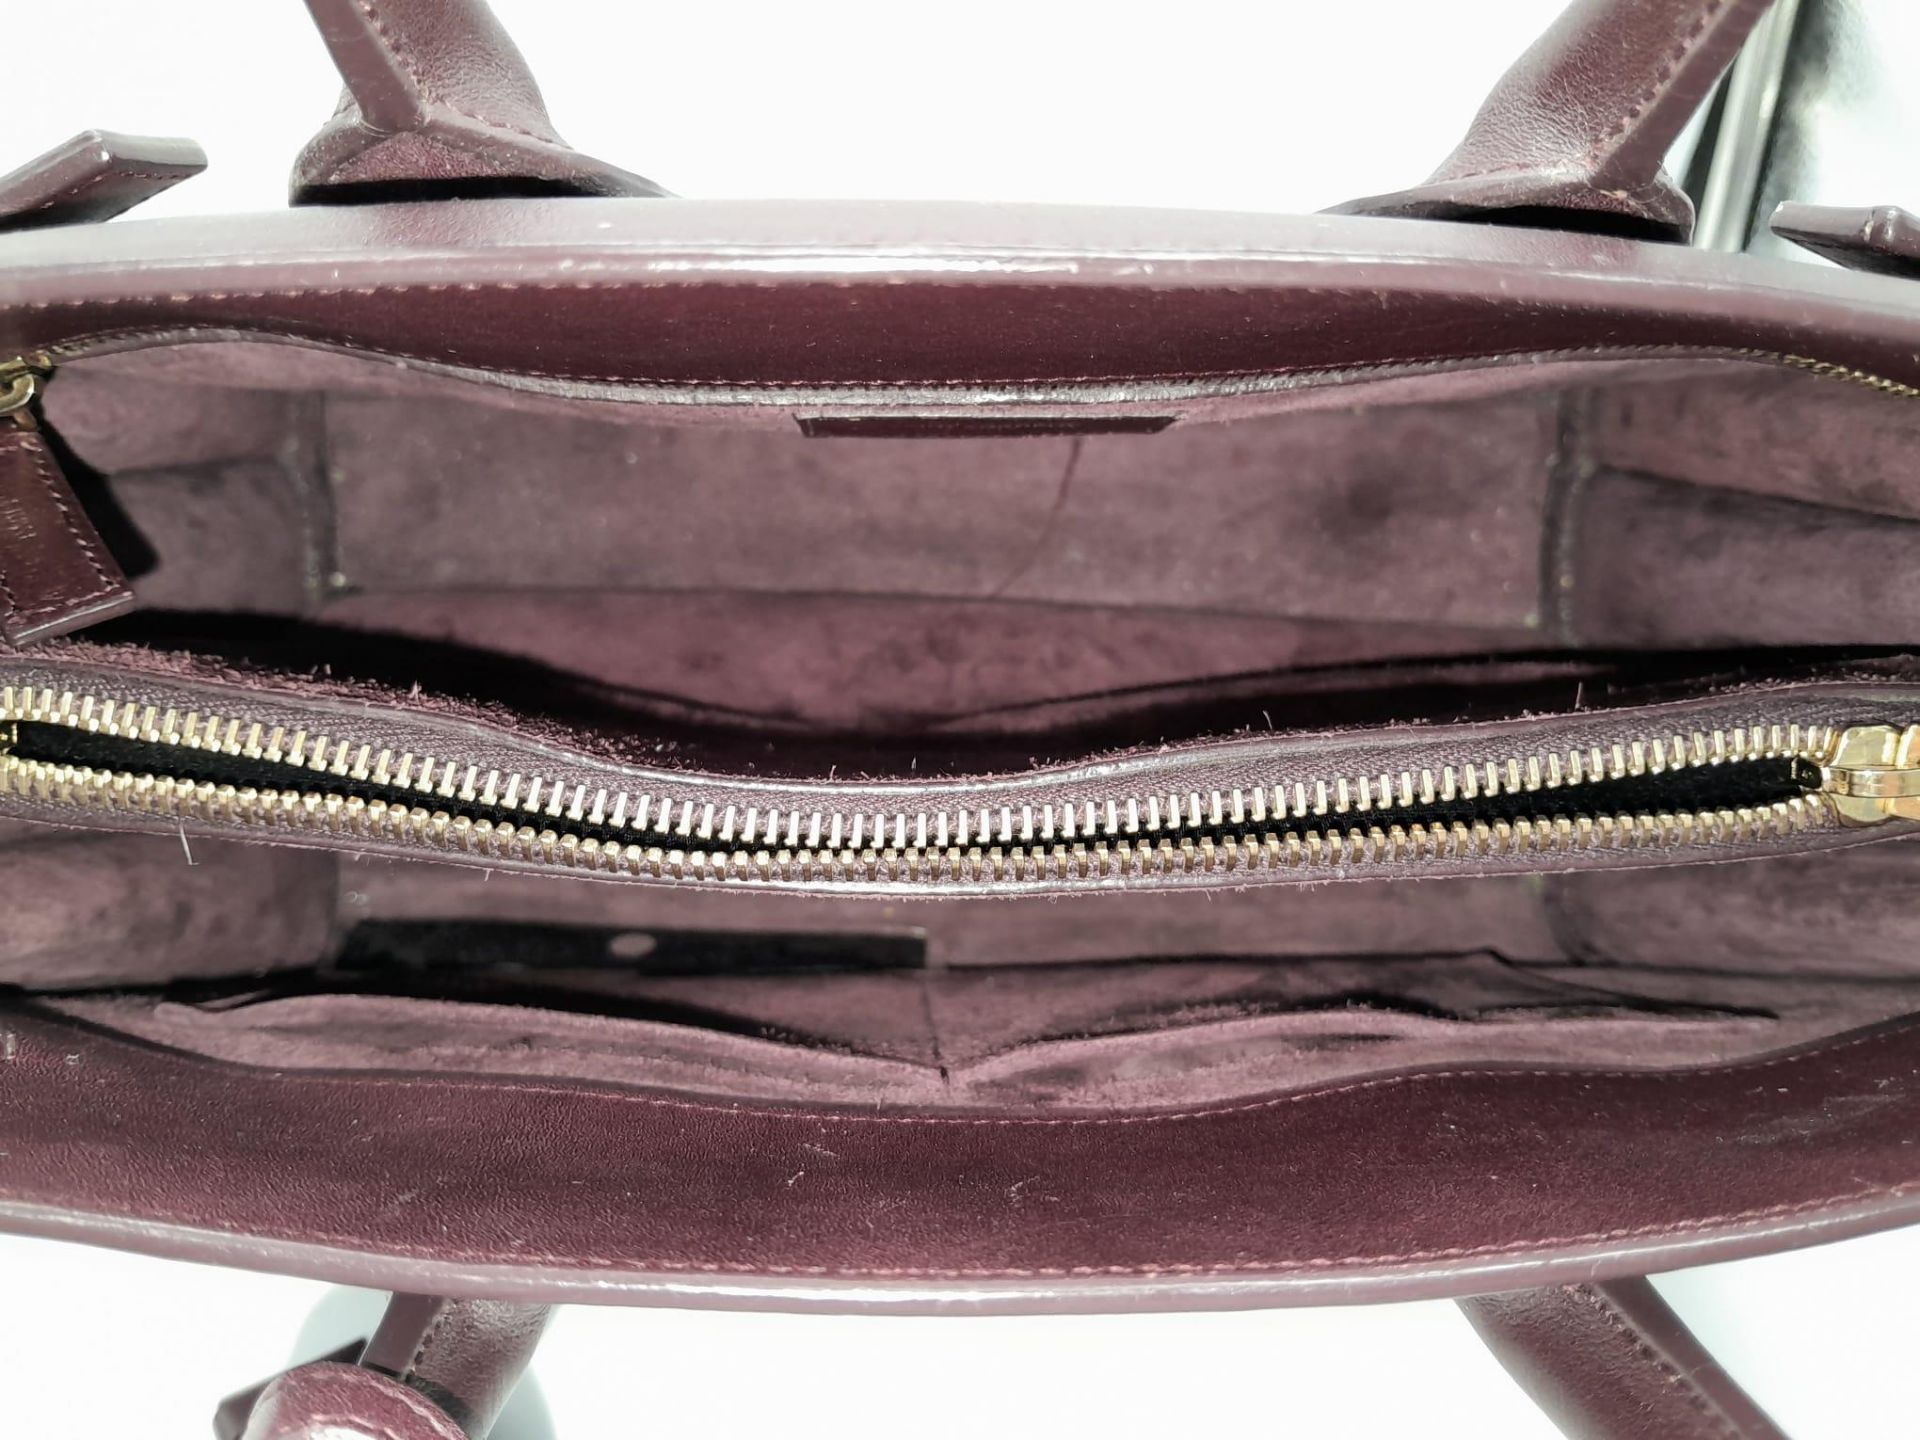 A Saint Laurent Sac De Jour Burgundy Handbag. Leather Exterior, Gold Tone Hardware, Double Handle in - Bild 6 aus 11